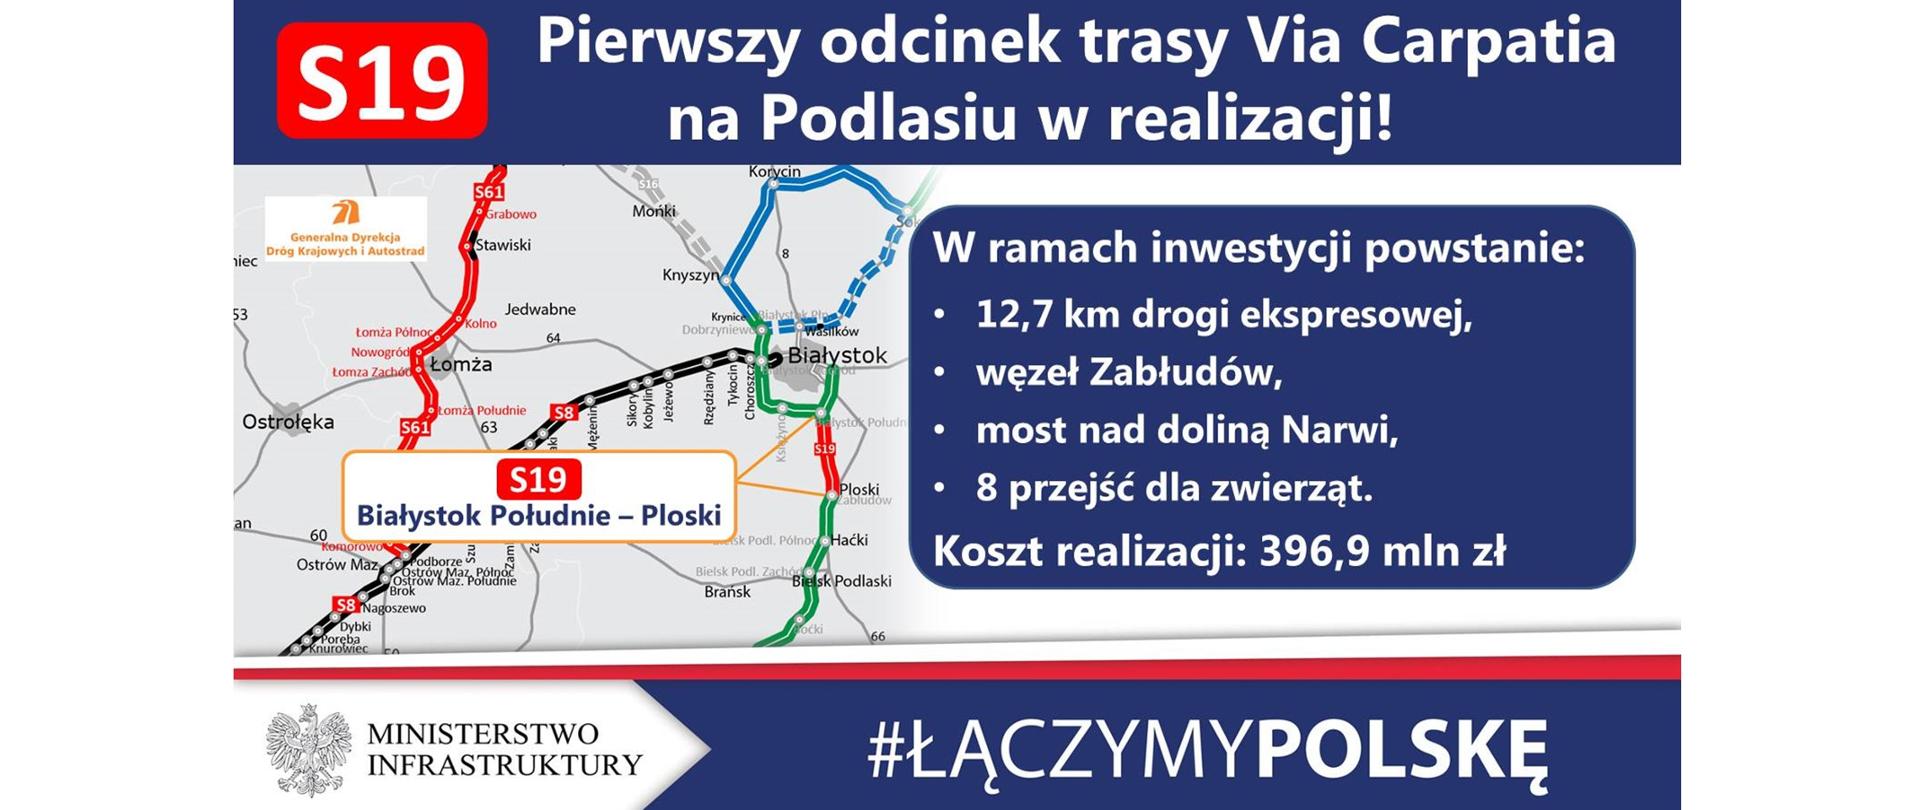 Pierwszy odcinek Via Carpatii na Podlasiu już w realizacji - infografika